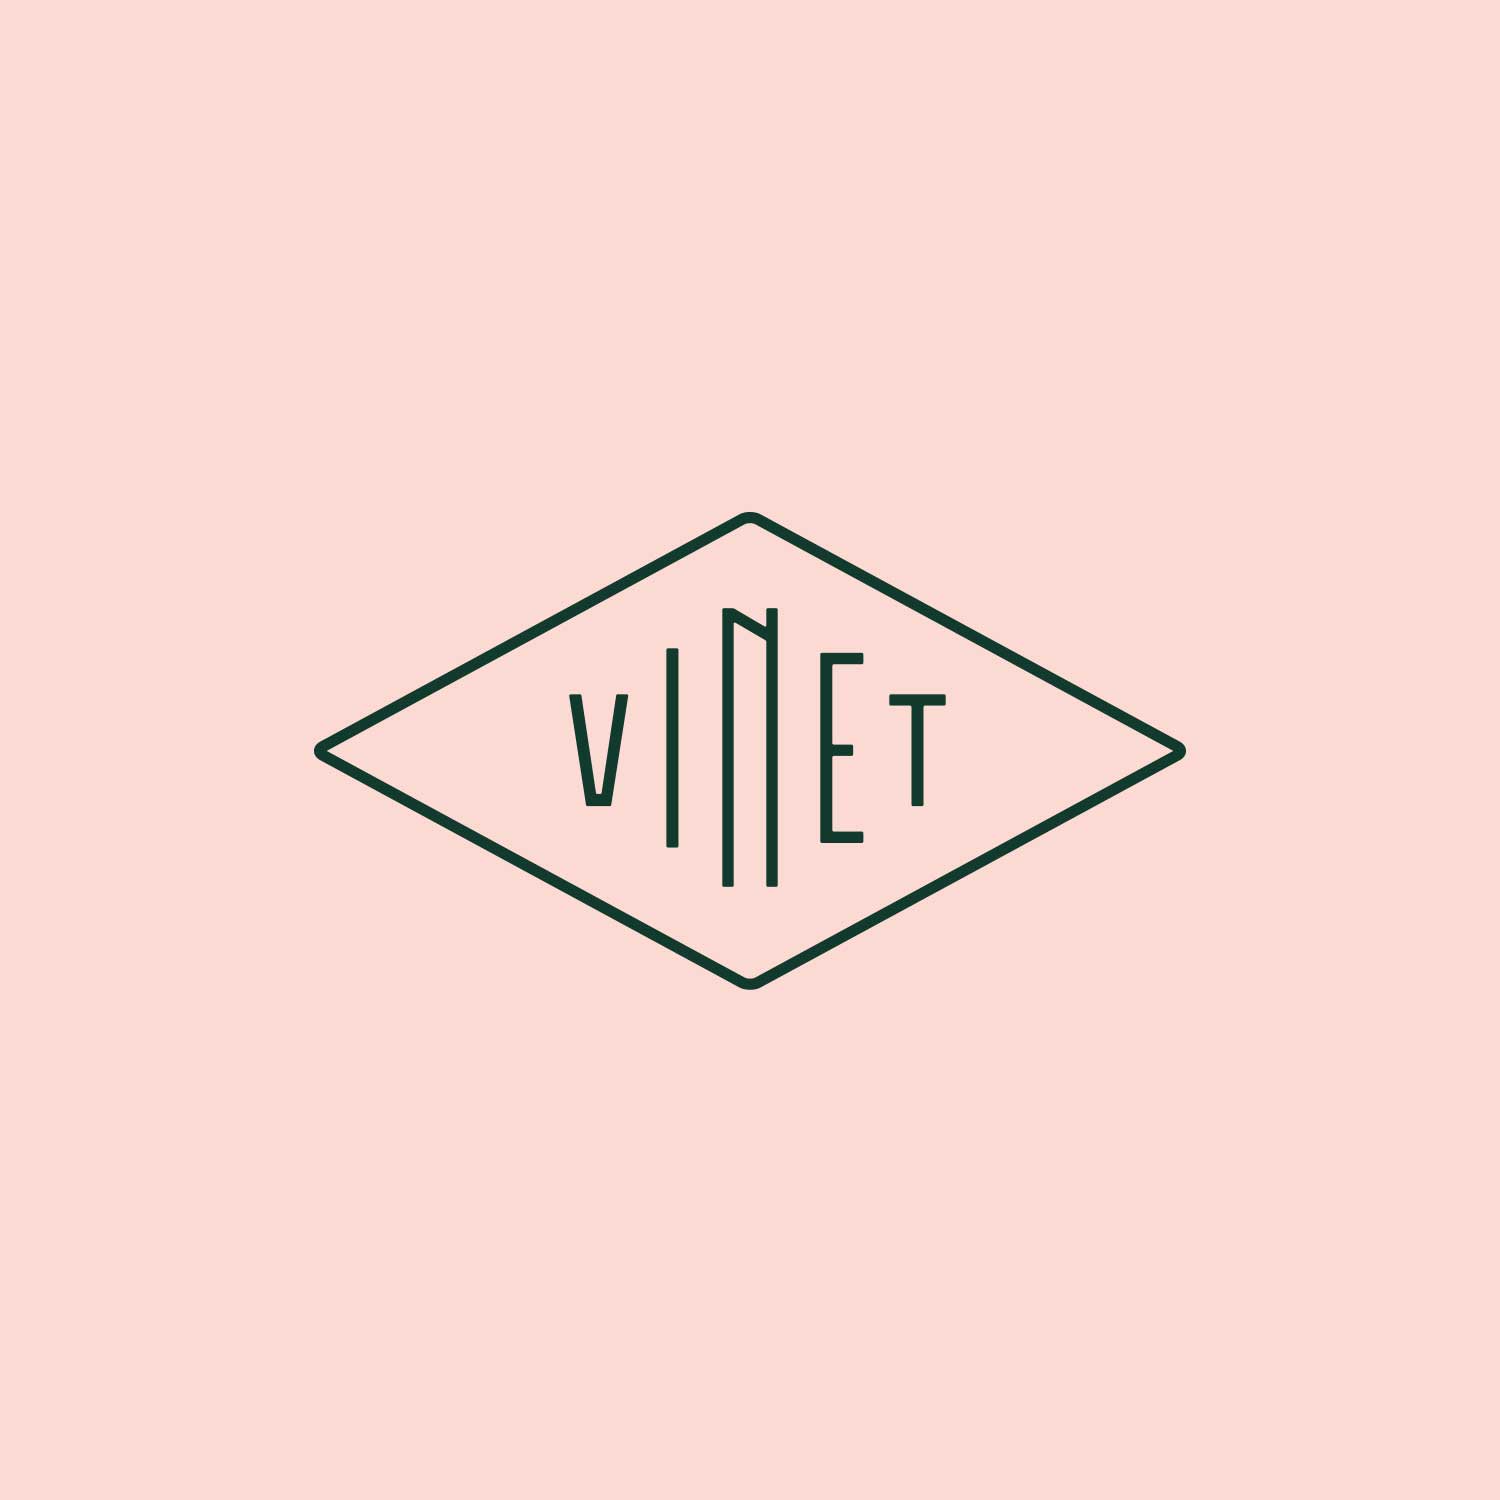 Vinet: Trüffel & Wein – Branddesign und Website